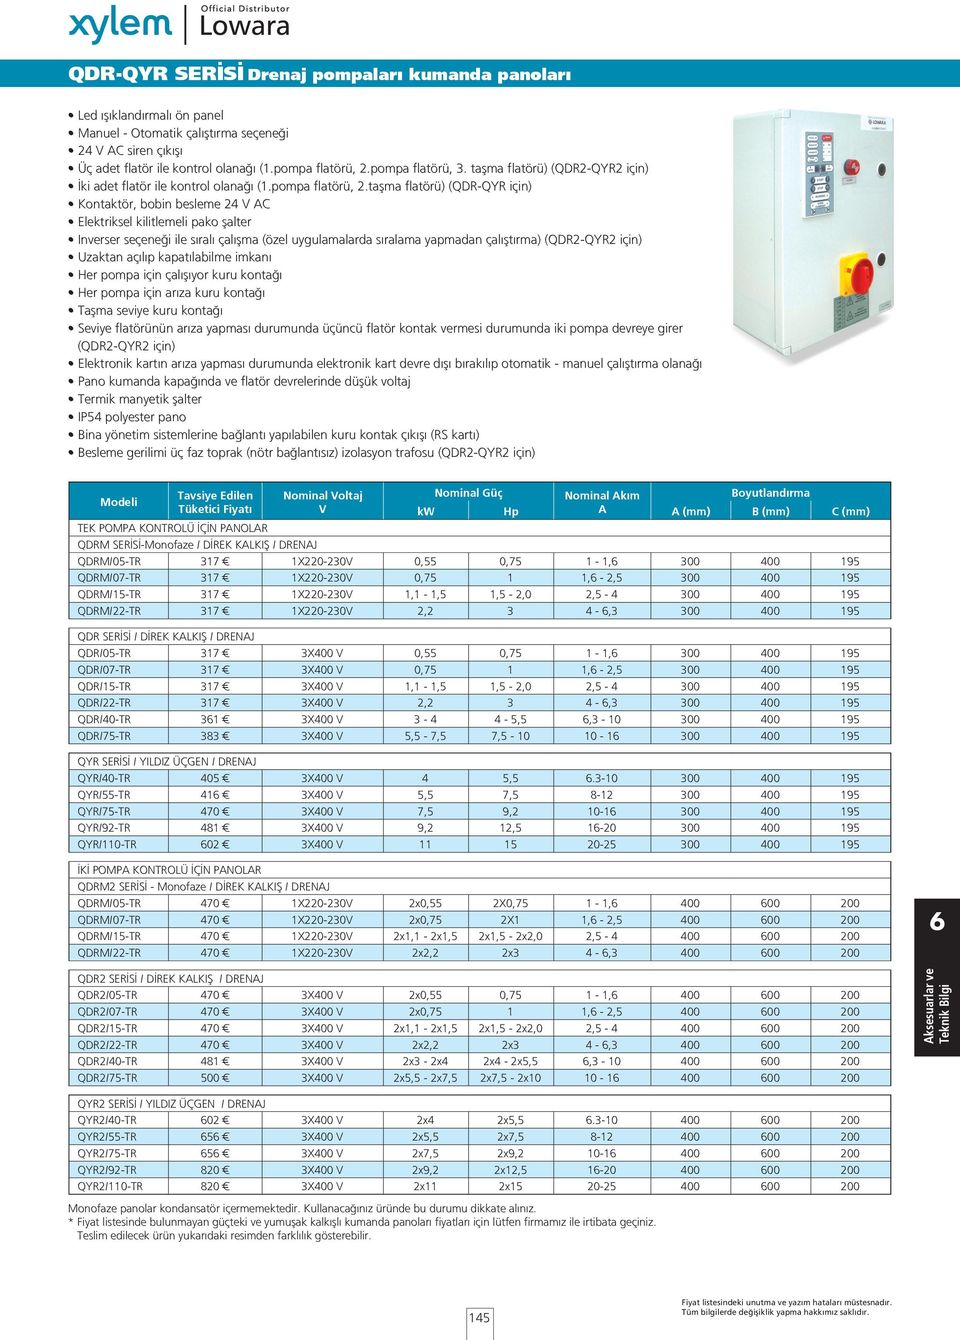 taşma flatörü) (QDR-QYR için) Kontaktör, bobin besleme 24 V AC Elektriksel kilitlemeli pako şalter Inverser seçeneği ile sıralı çalışma (özel uygulamalarda sıralama yapmadan çalıştırma) (QDR2-QYR2